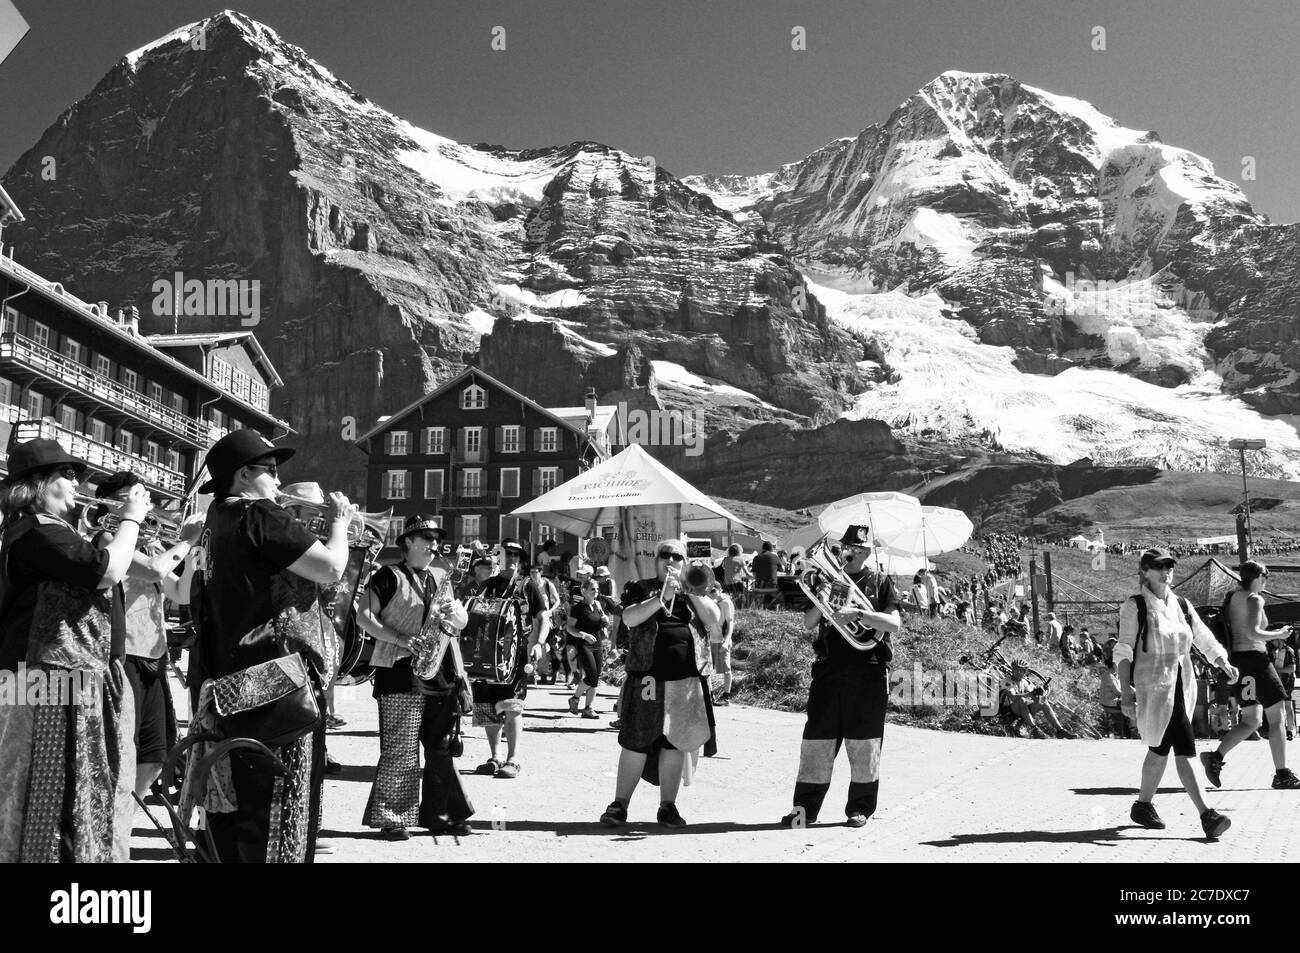 Musikband spielt auf der Kleinen Scheidegg anlässlich des Jungfrau-Marathons vor der Kulisse von Mönch und Jungfrau | Brassband playing at the train s Stock Photo